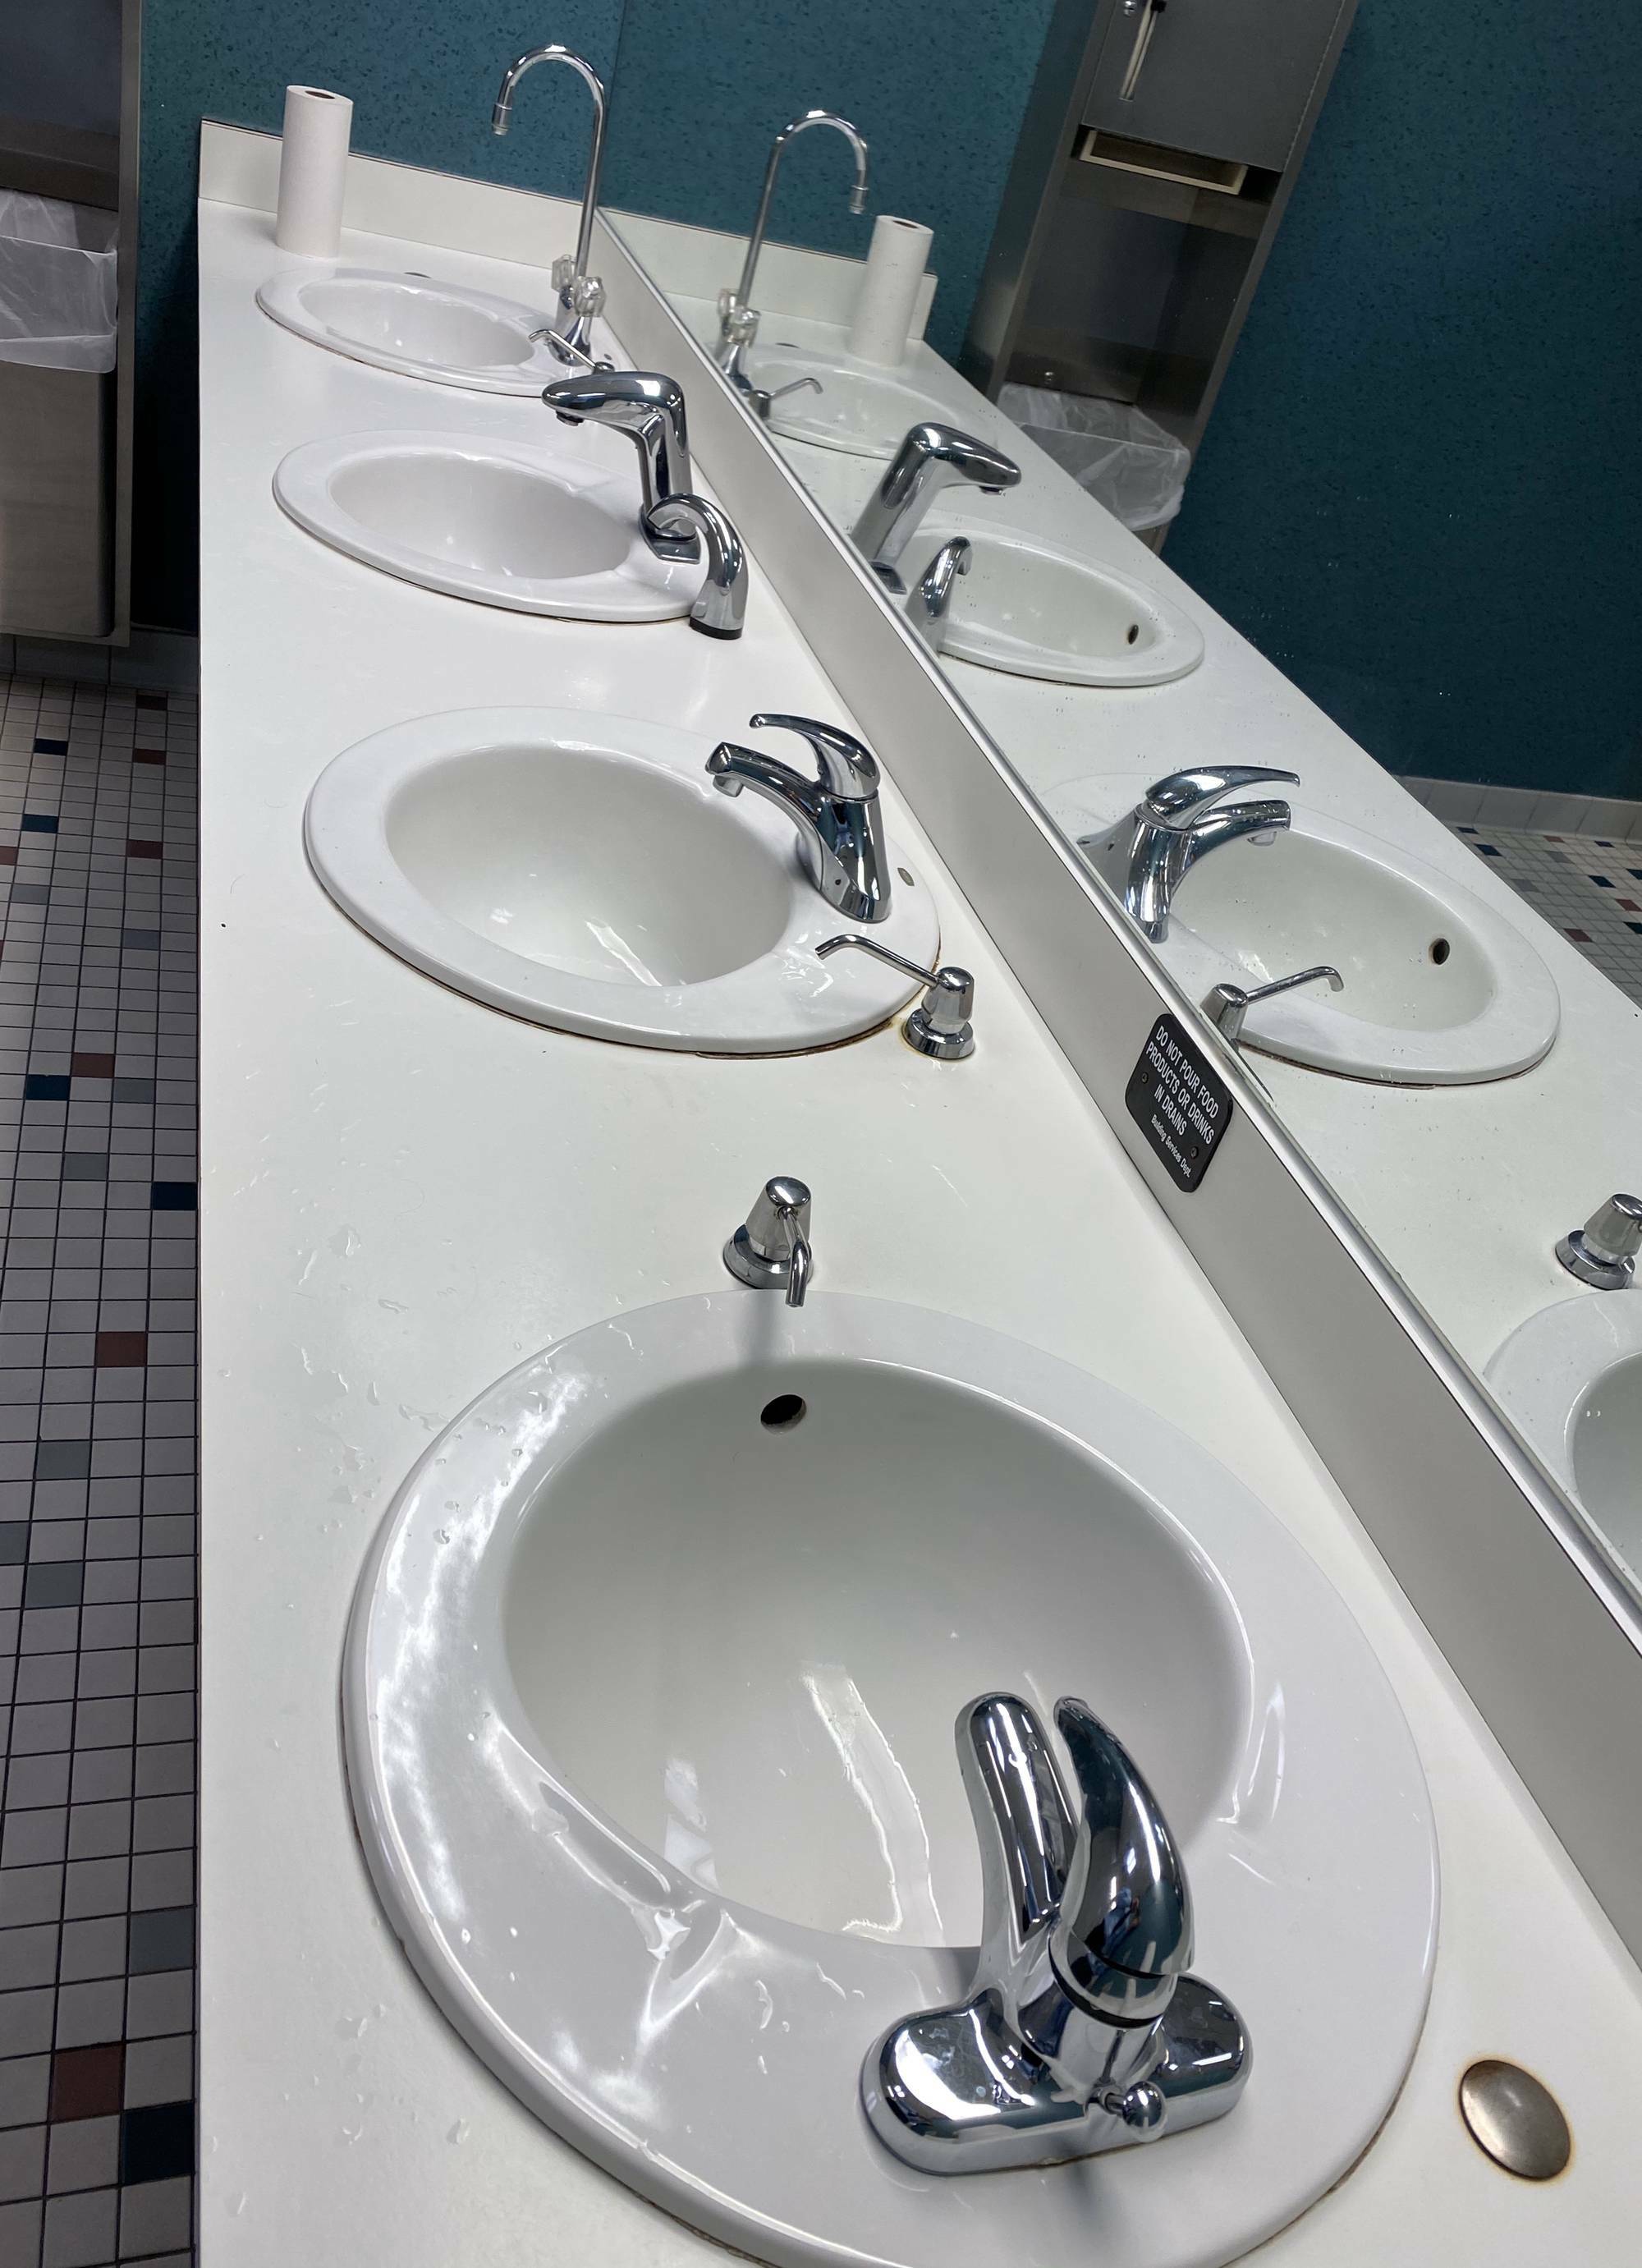 Chaque lavabo de cette salle de bain a un robinet différent.